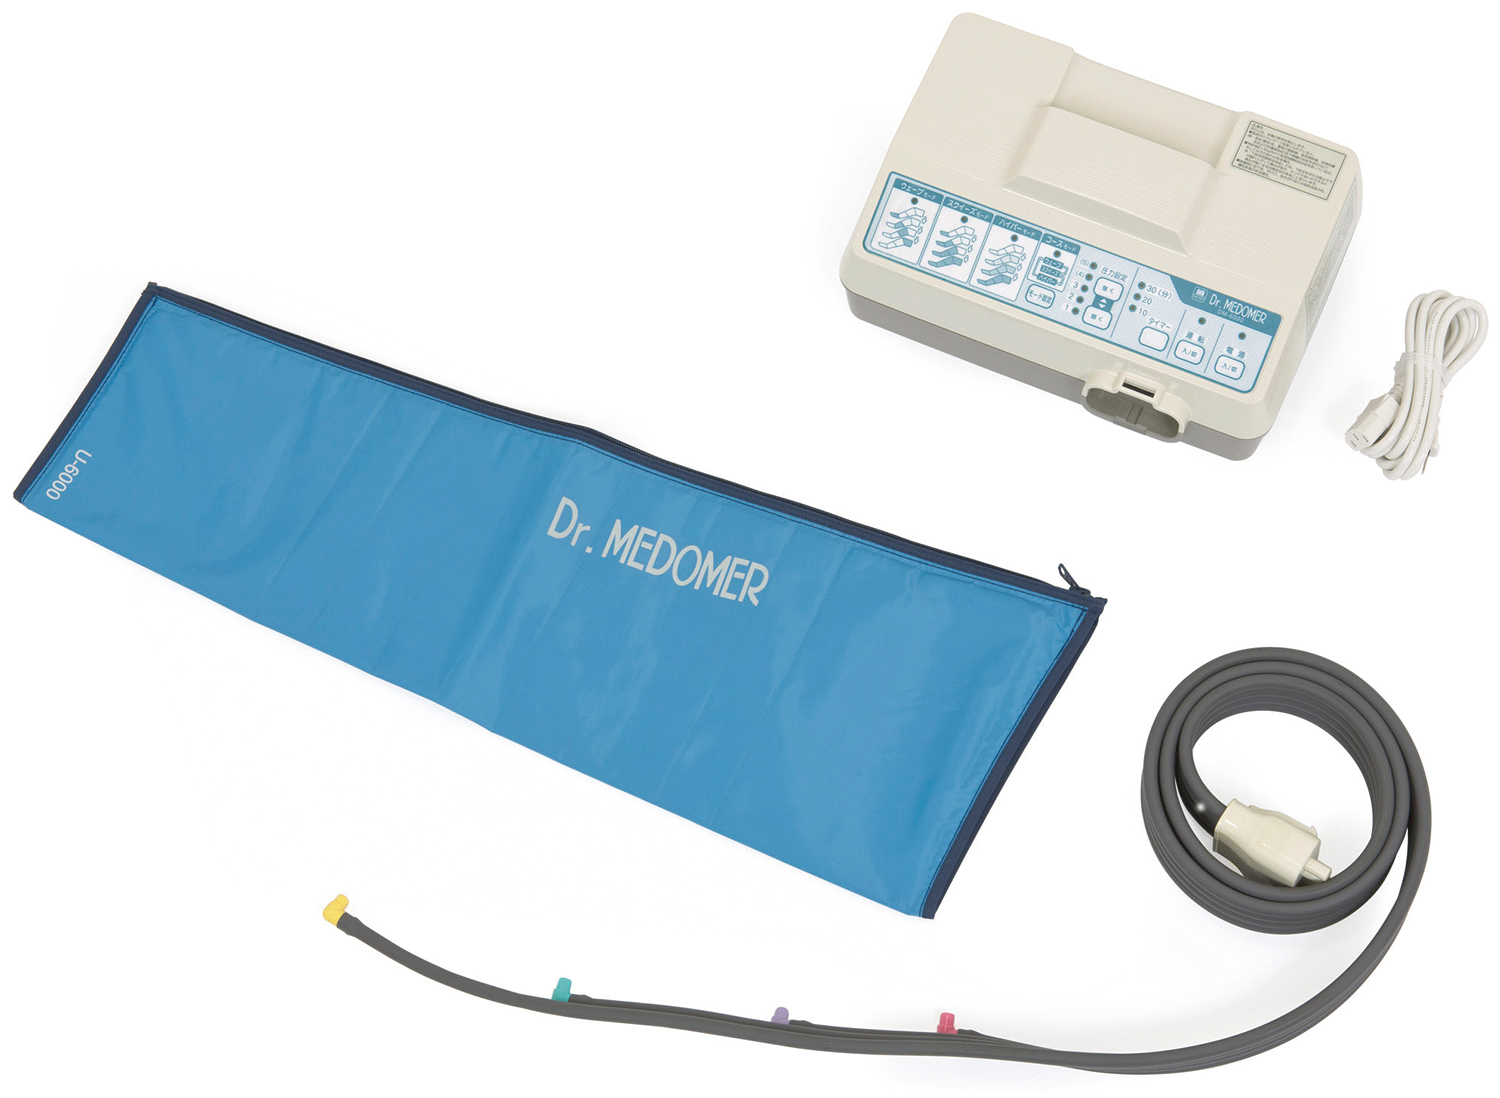 物理療法 マッサージ療法 家庭用エアマッサージ器 ドクターメドマー Dm 6000 物理療法機器 リハビリ機器 入浴機器 オージーウエルネス